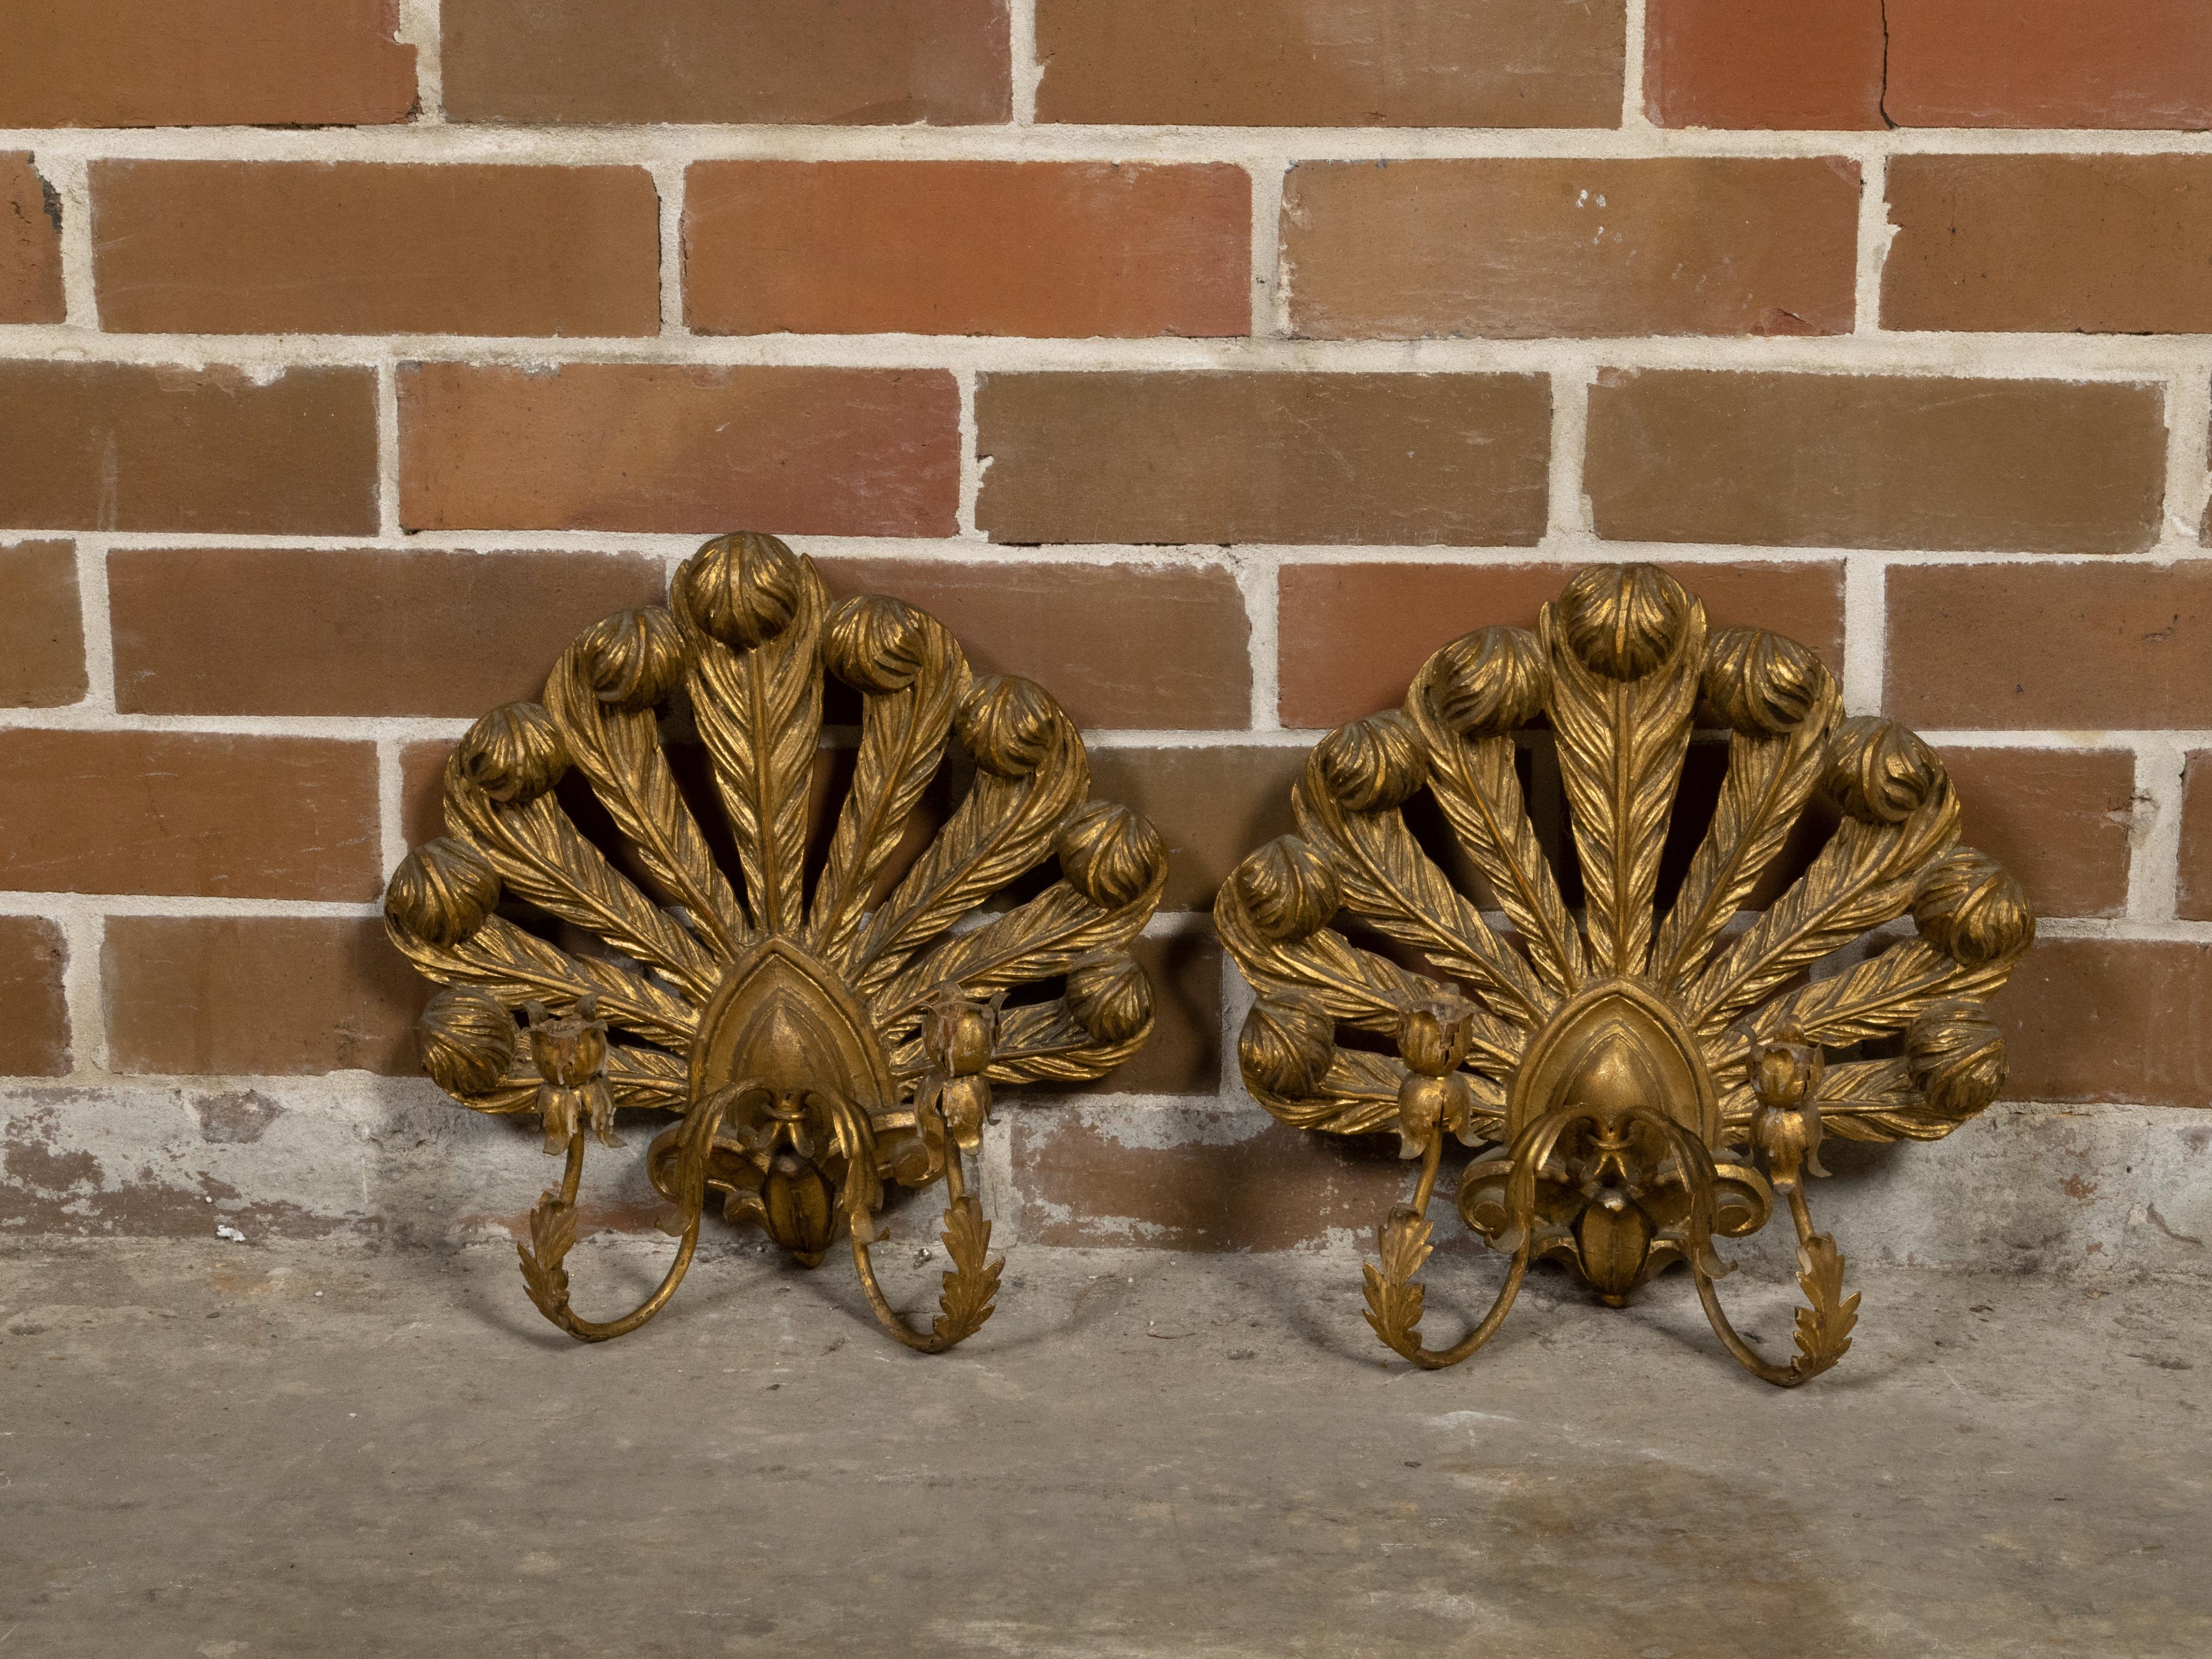 Paire d'appliques à bougie italiennes en bois doré du milieu du 20e siècle, avec deux bras, des plumes sculptées et des feuilles d'acanthe. Créée en Italie au cours de la période du milieu du siècle, cette paire d'appliques à bougie attire